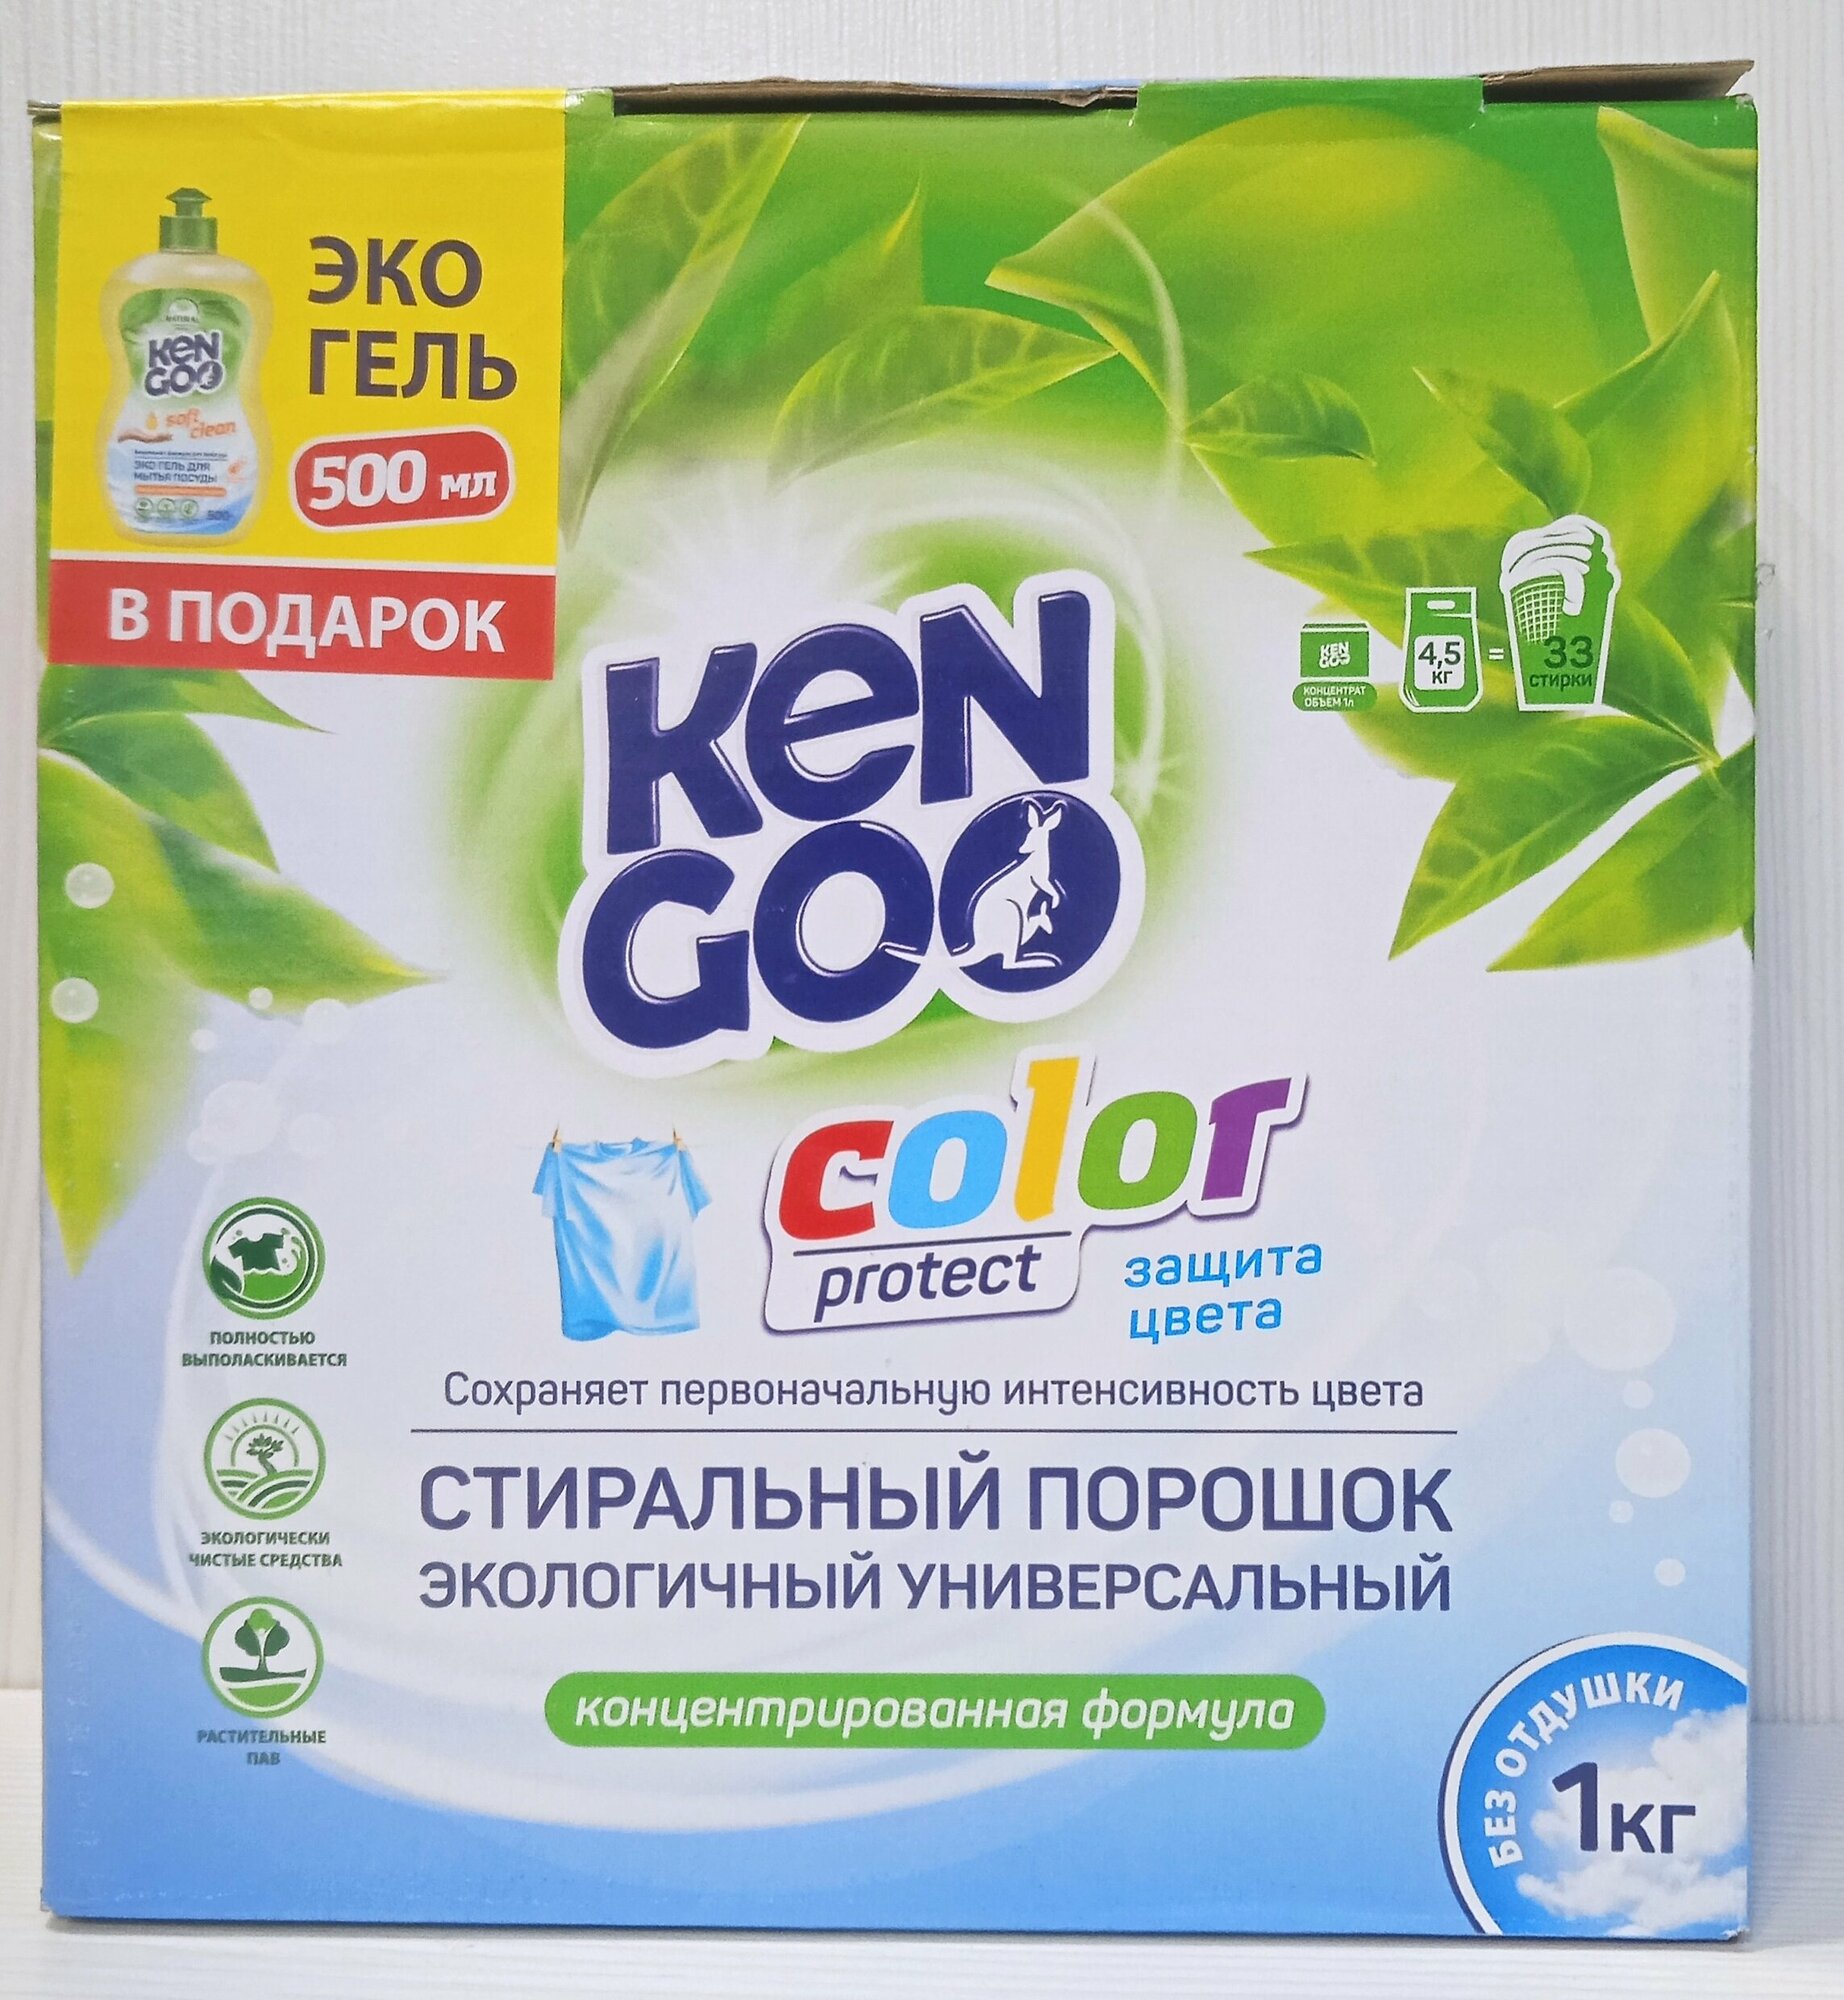 KenGoo. Стиральный порошок экологичный универсальный Color Protect + Эко-гель 500мл в подарок! 1кг.